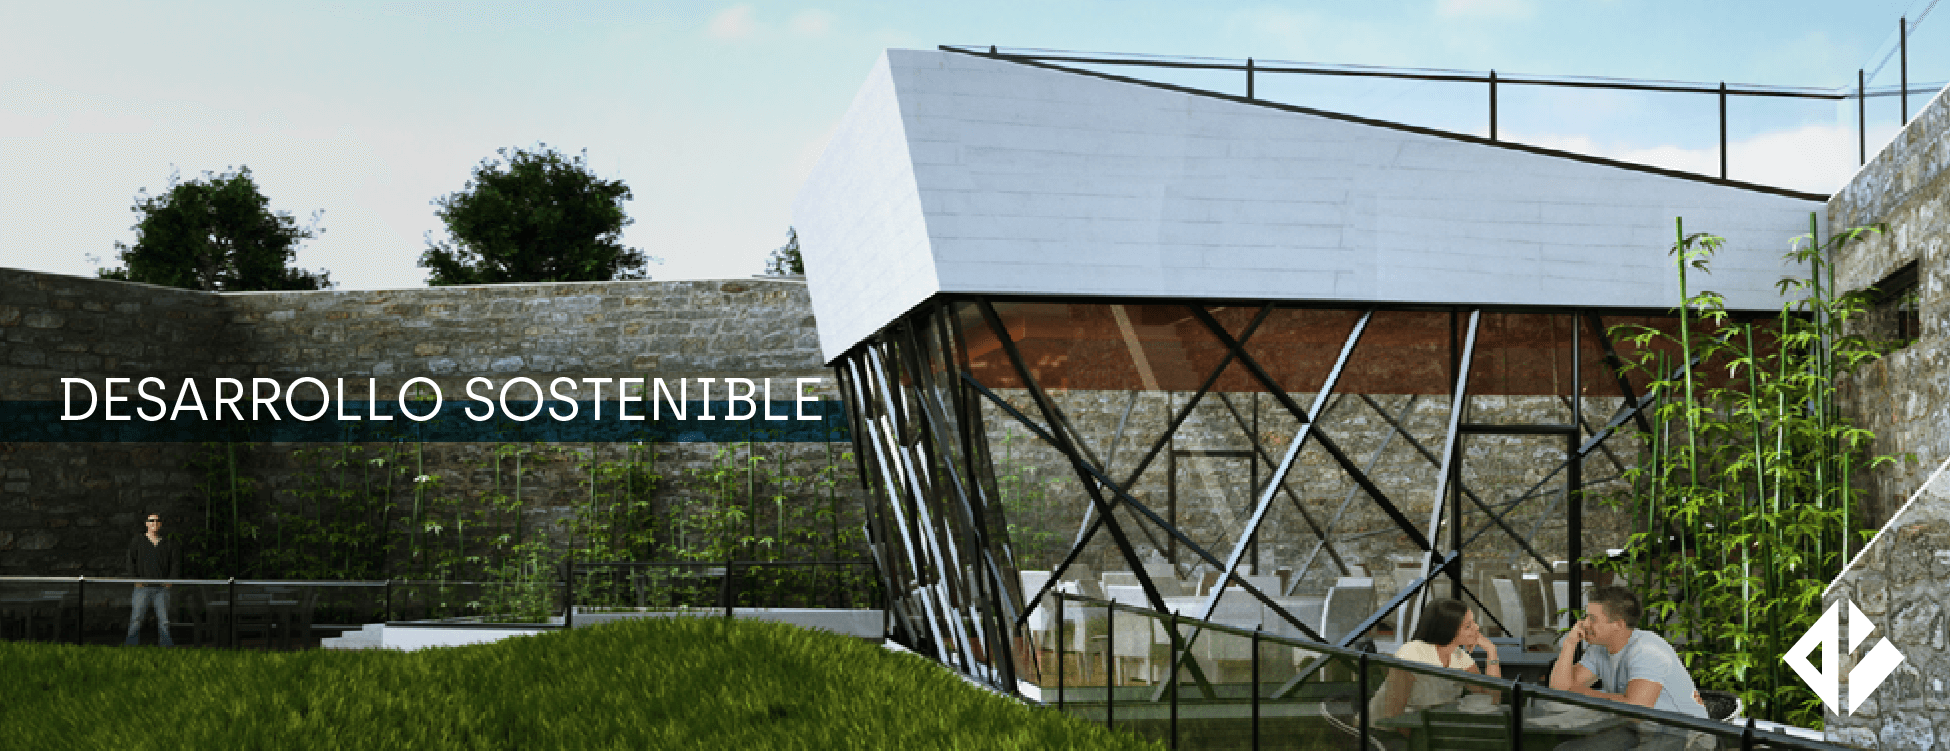 Desarrollo sostenible, Rodríguez Ayanz Arquitectura y Urbanismo en Asturias